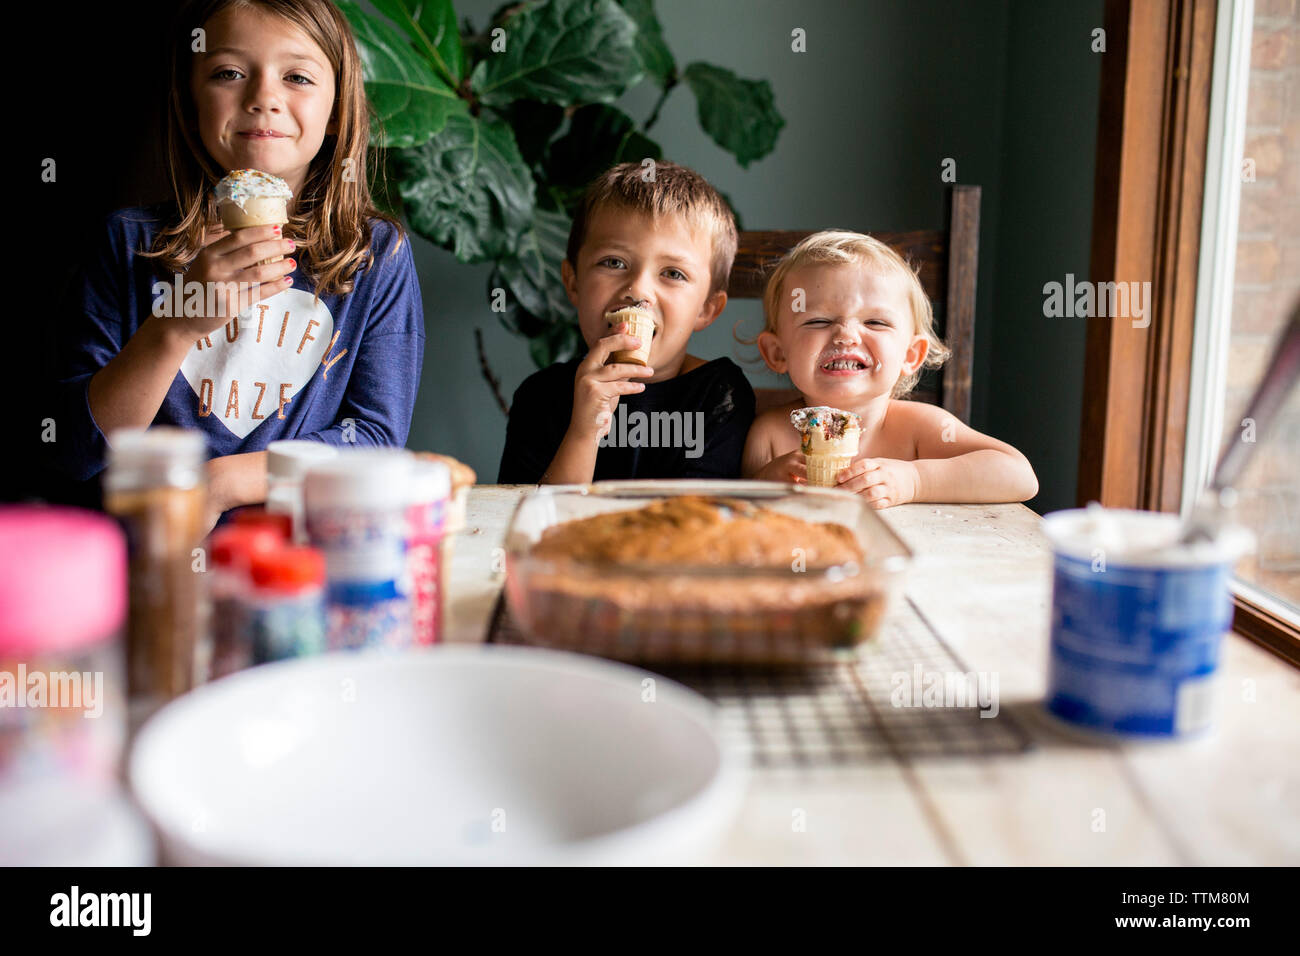 Drei junge Geschwister, goofy mit süßem Gebäck am Tisch Stockfoto